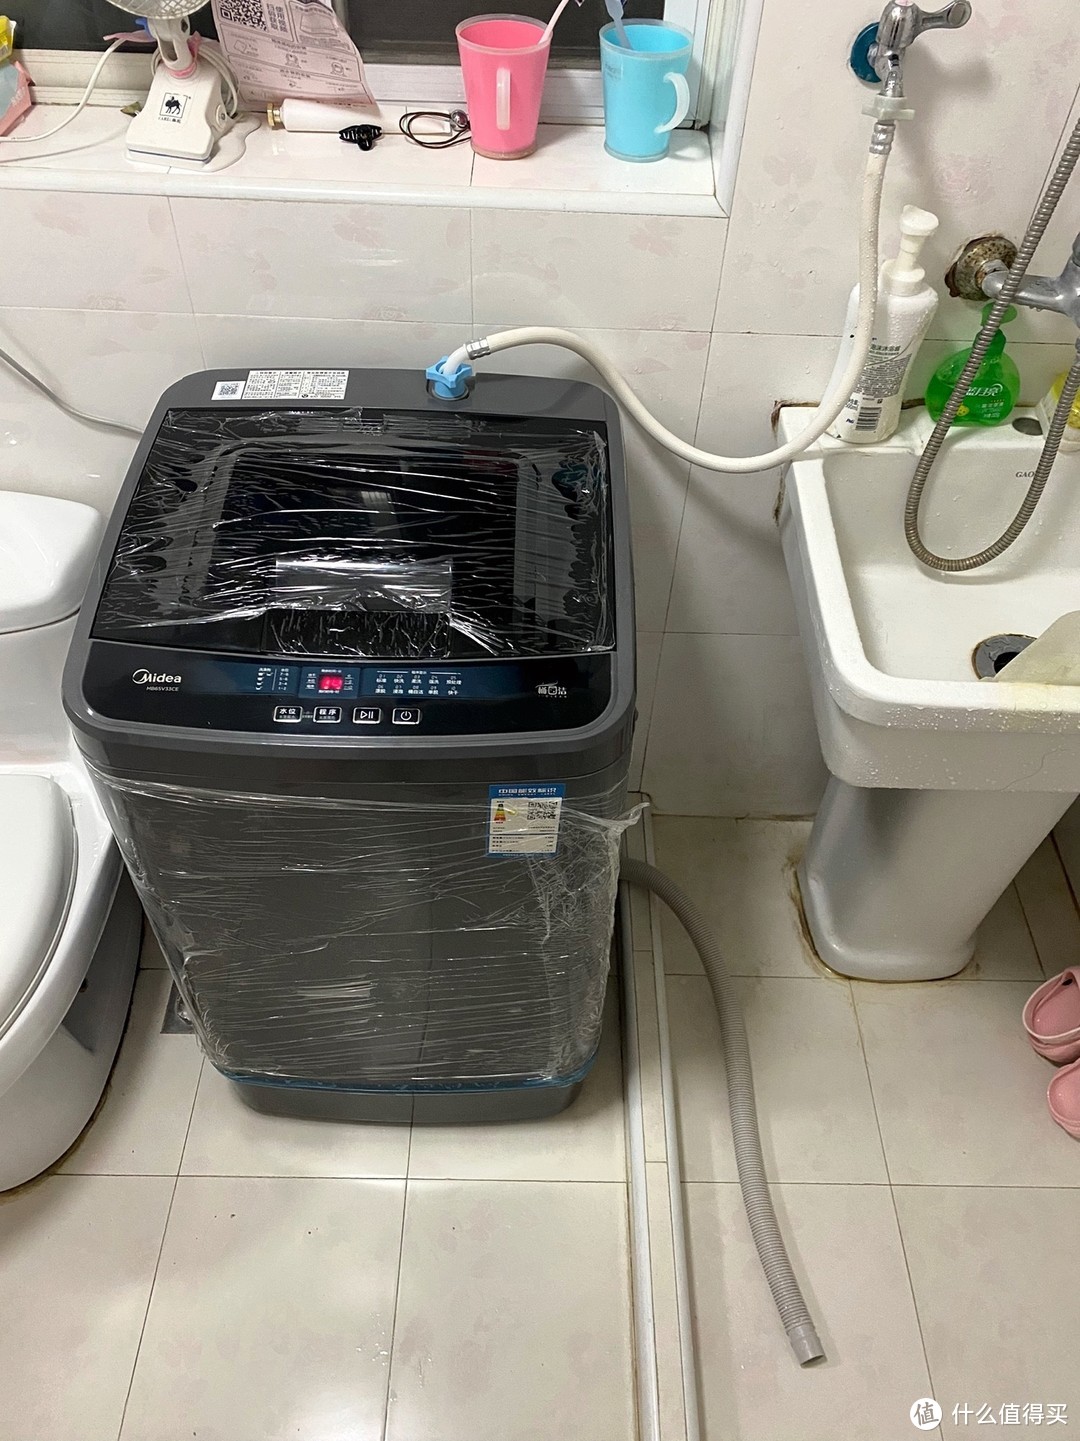 2美的洗衣机6.5公斤波轮全自动免清洗脱小型宿舍租房单身MB65V33CE